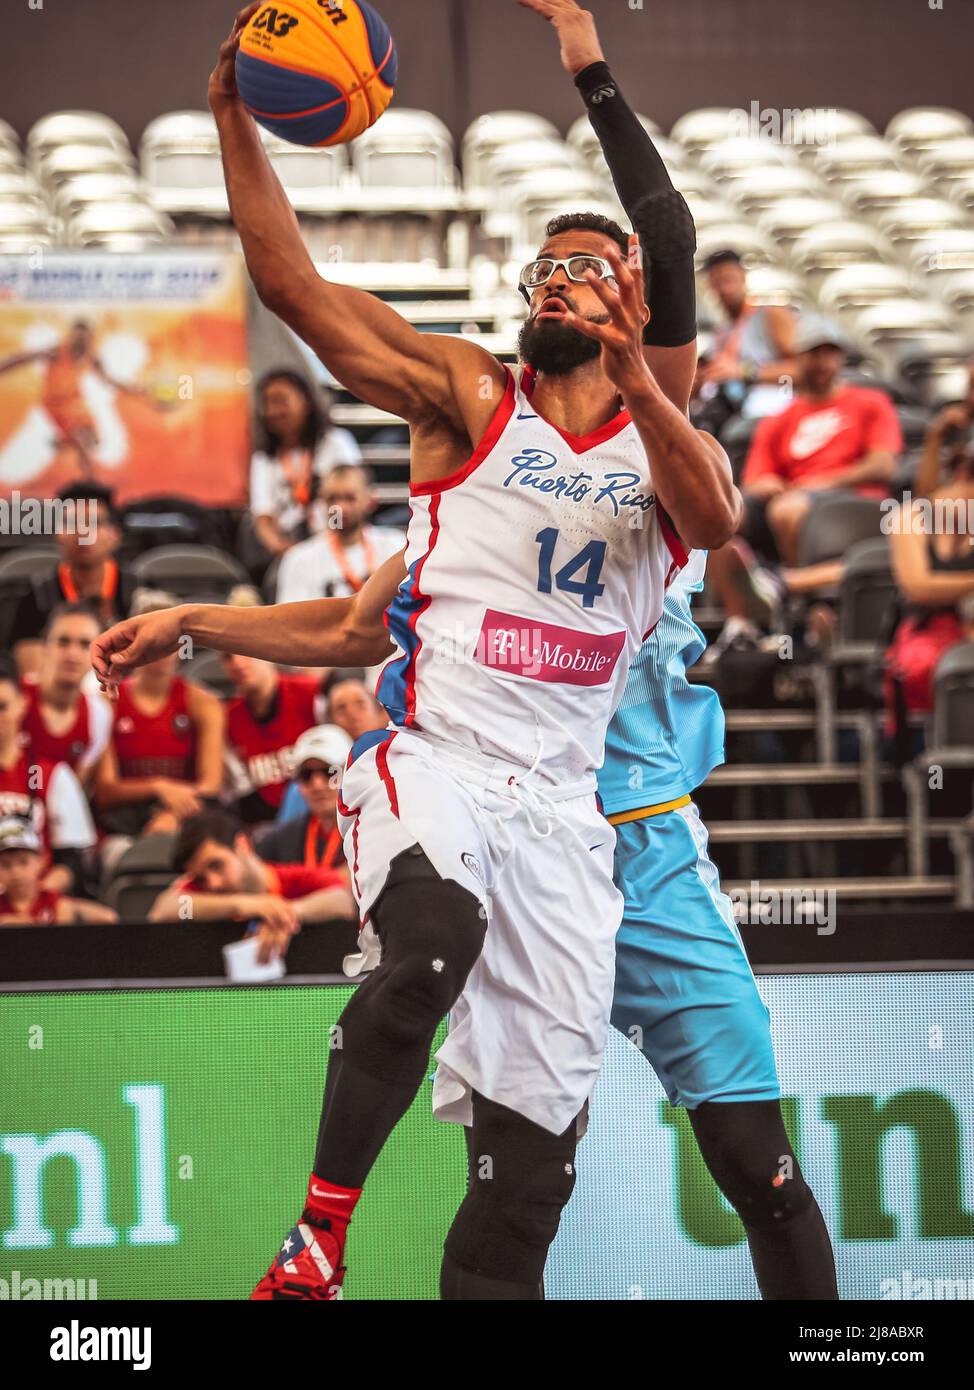 Amsterdam, Holanda, 18 de junio de 2019: El jugador puertorriqueño de  baloncesto Gilberto Clavell en acción durante la Copa Mundial de Básquetbol  3x3 en Ámsterdam Fotografía de stock - Alamy